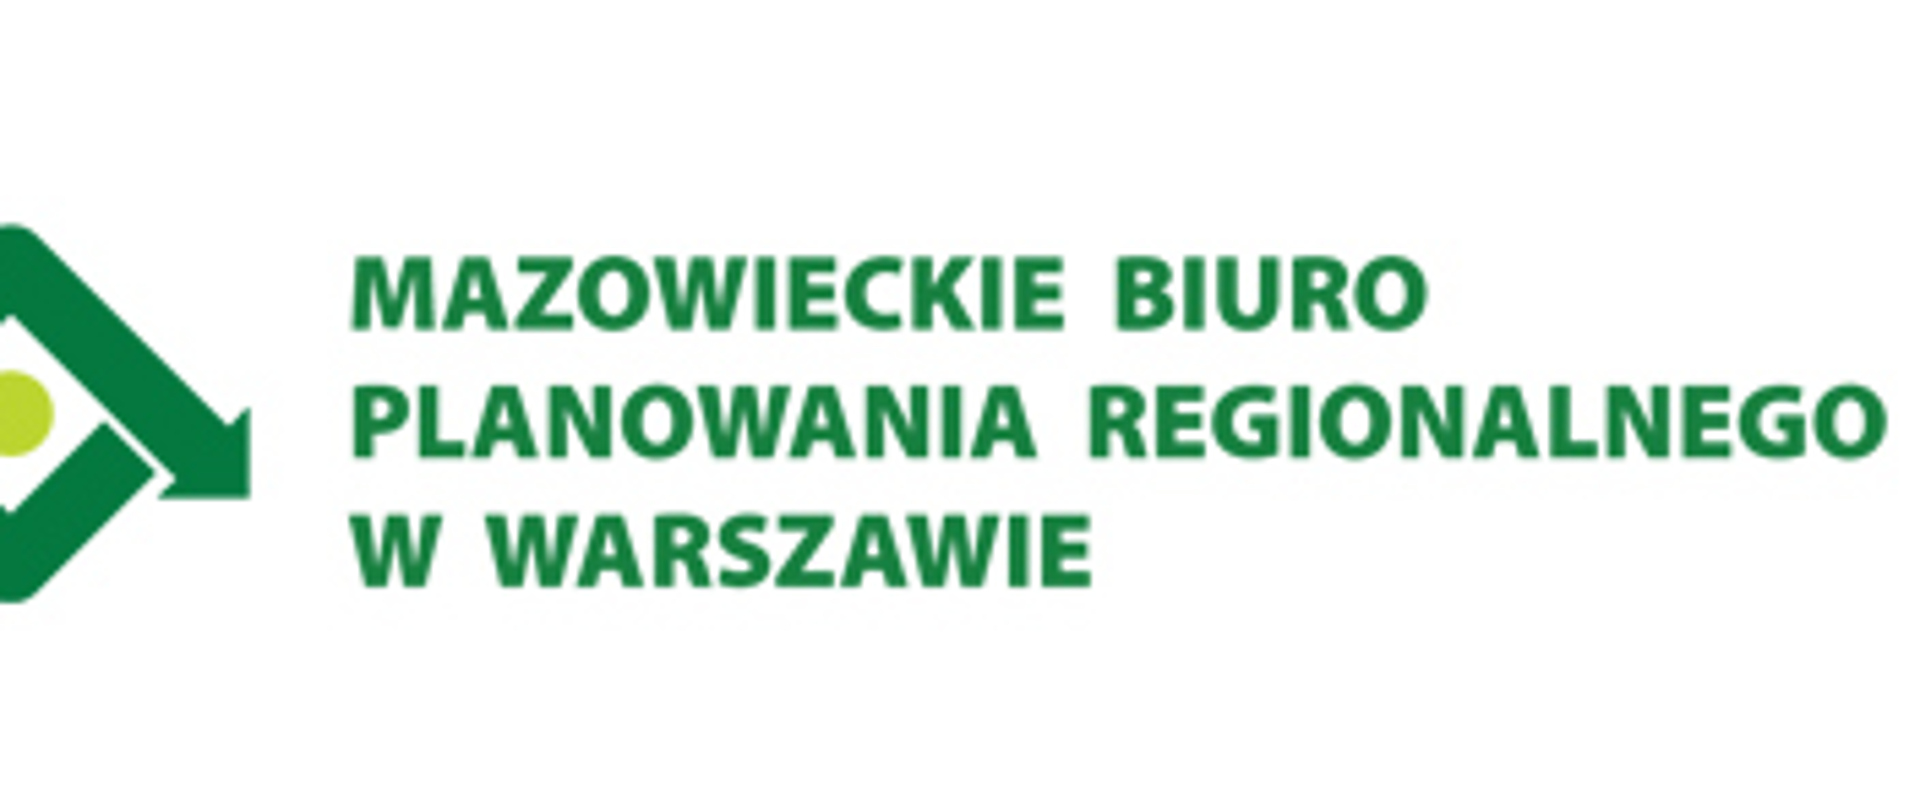 z lewej strony na białym tle zielony napis: "Mazowieckie Biuro Planowania Regionalnego w Warszawie"
z prawej czarny napis "Politechnika Warszawska"